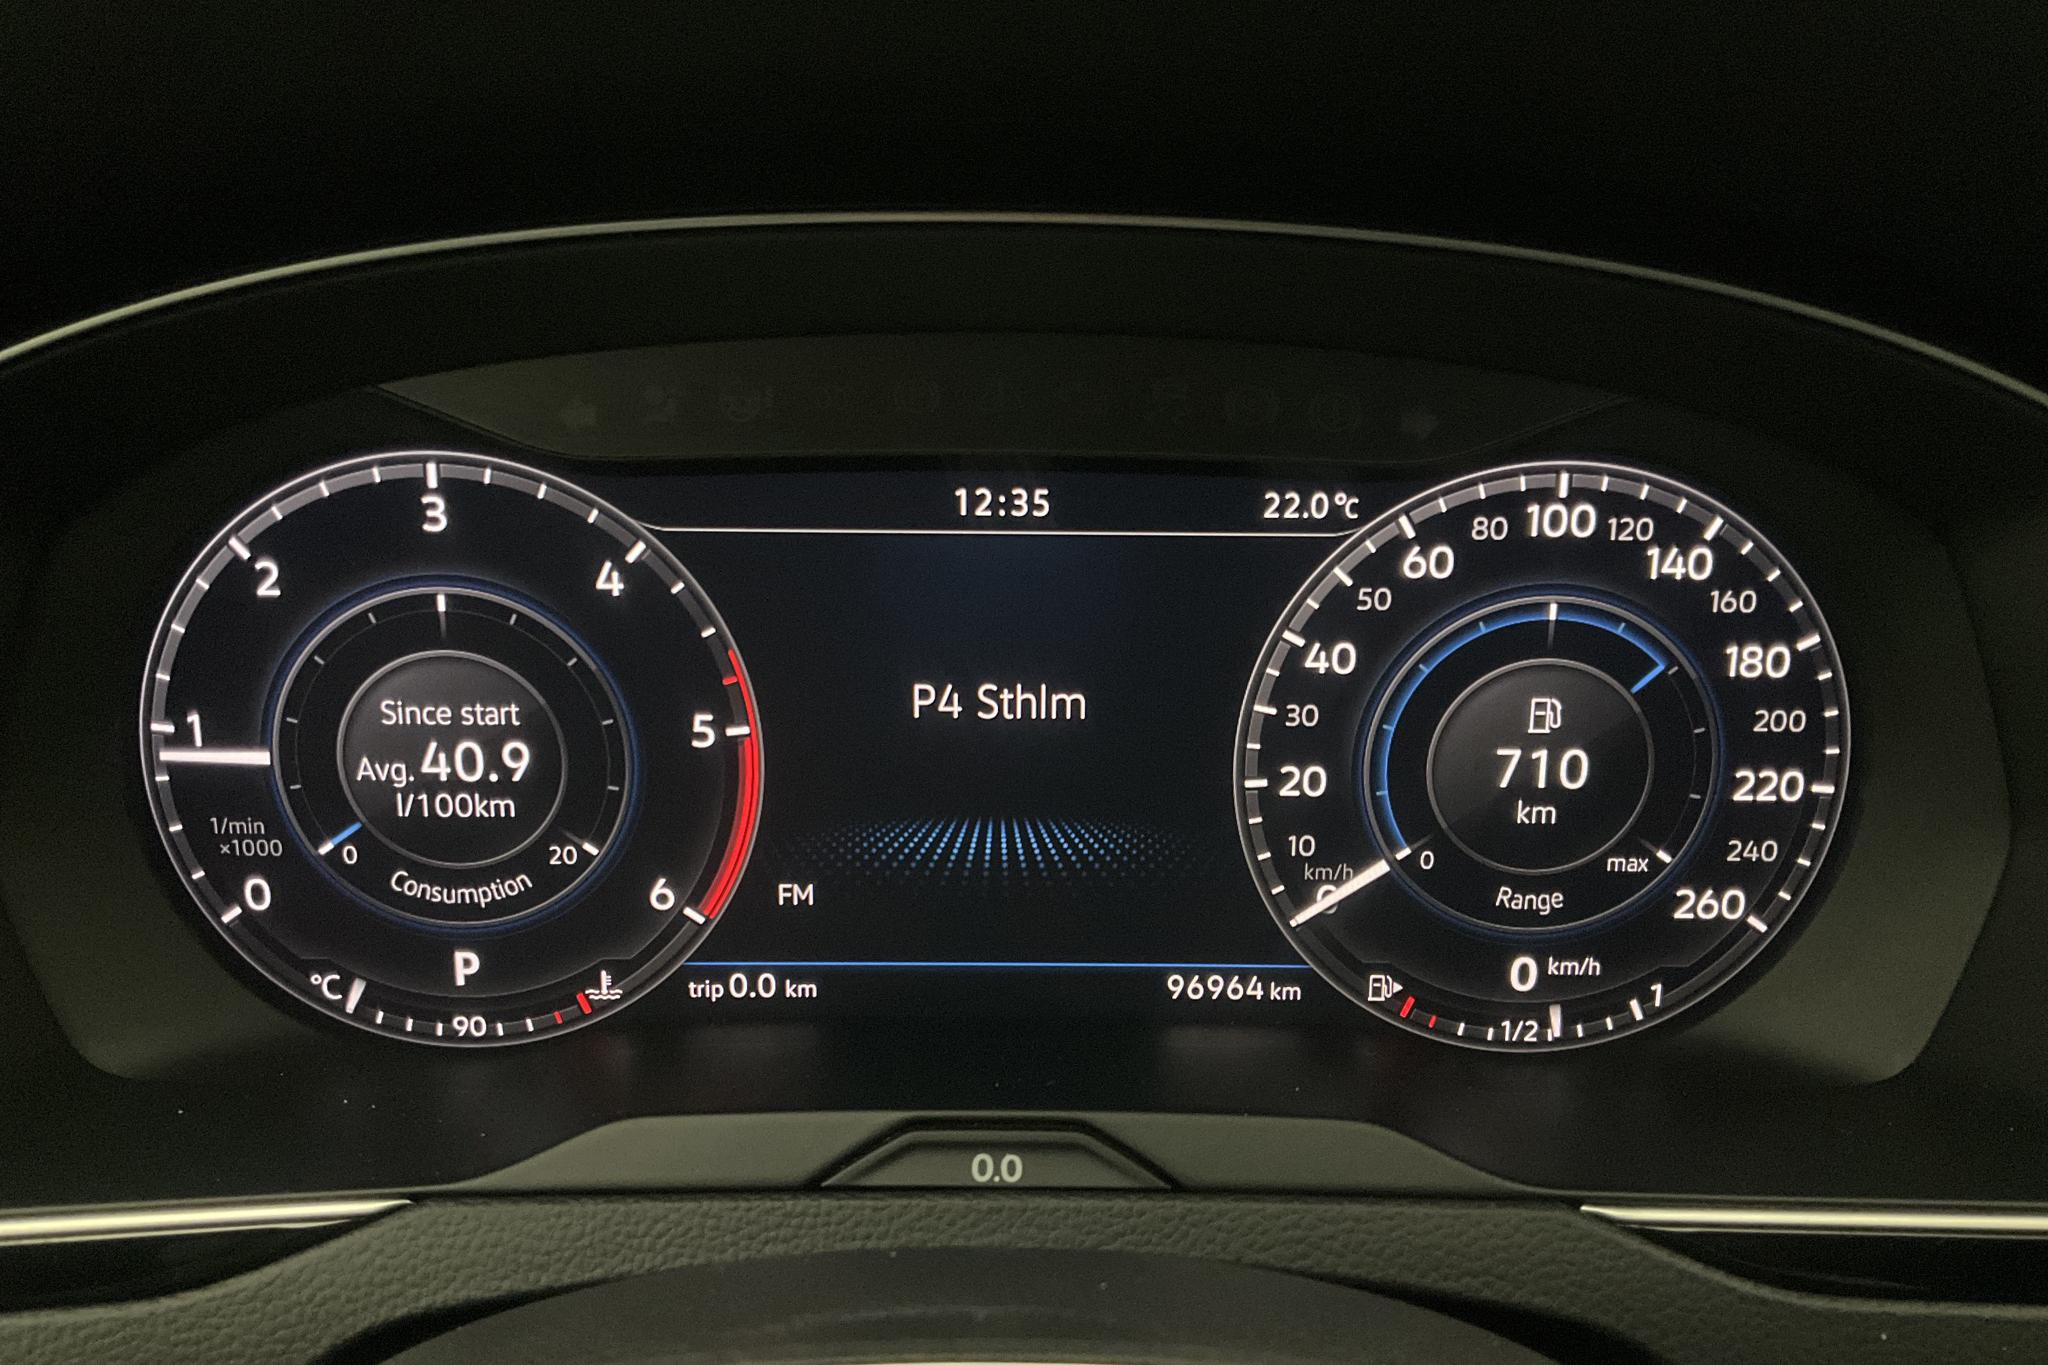 VW Passat 2.0 TDI BiTurbo 4MOTION (240hk) - 9 697 mil - Automat - silver - 2015